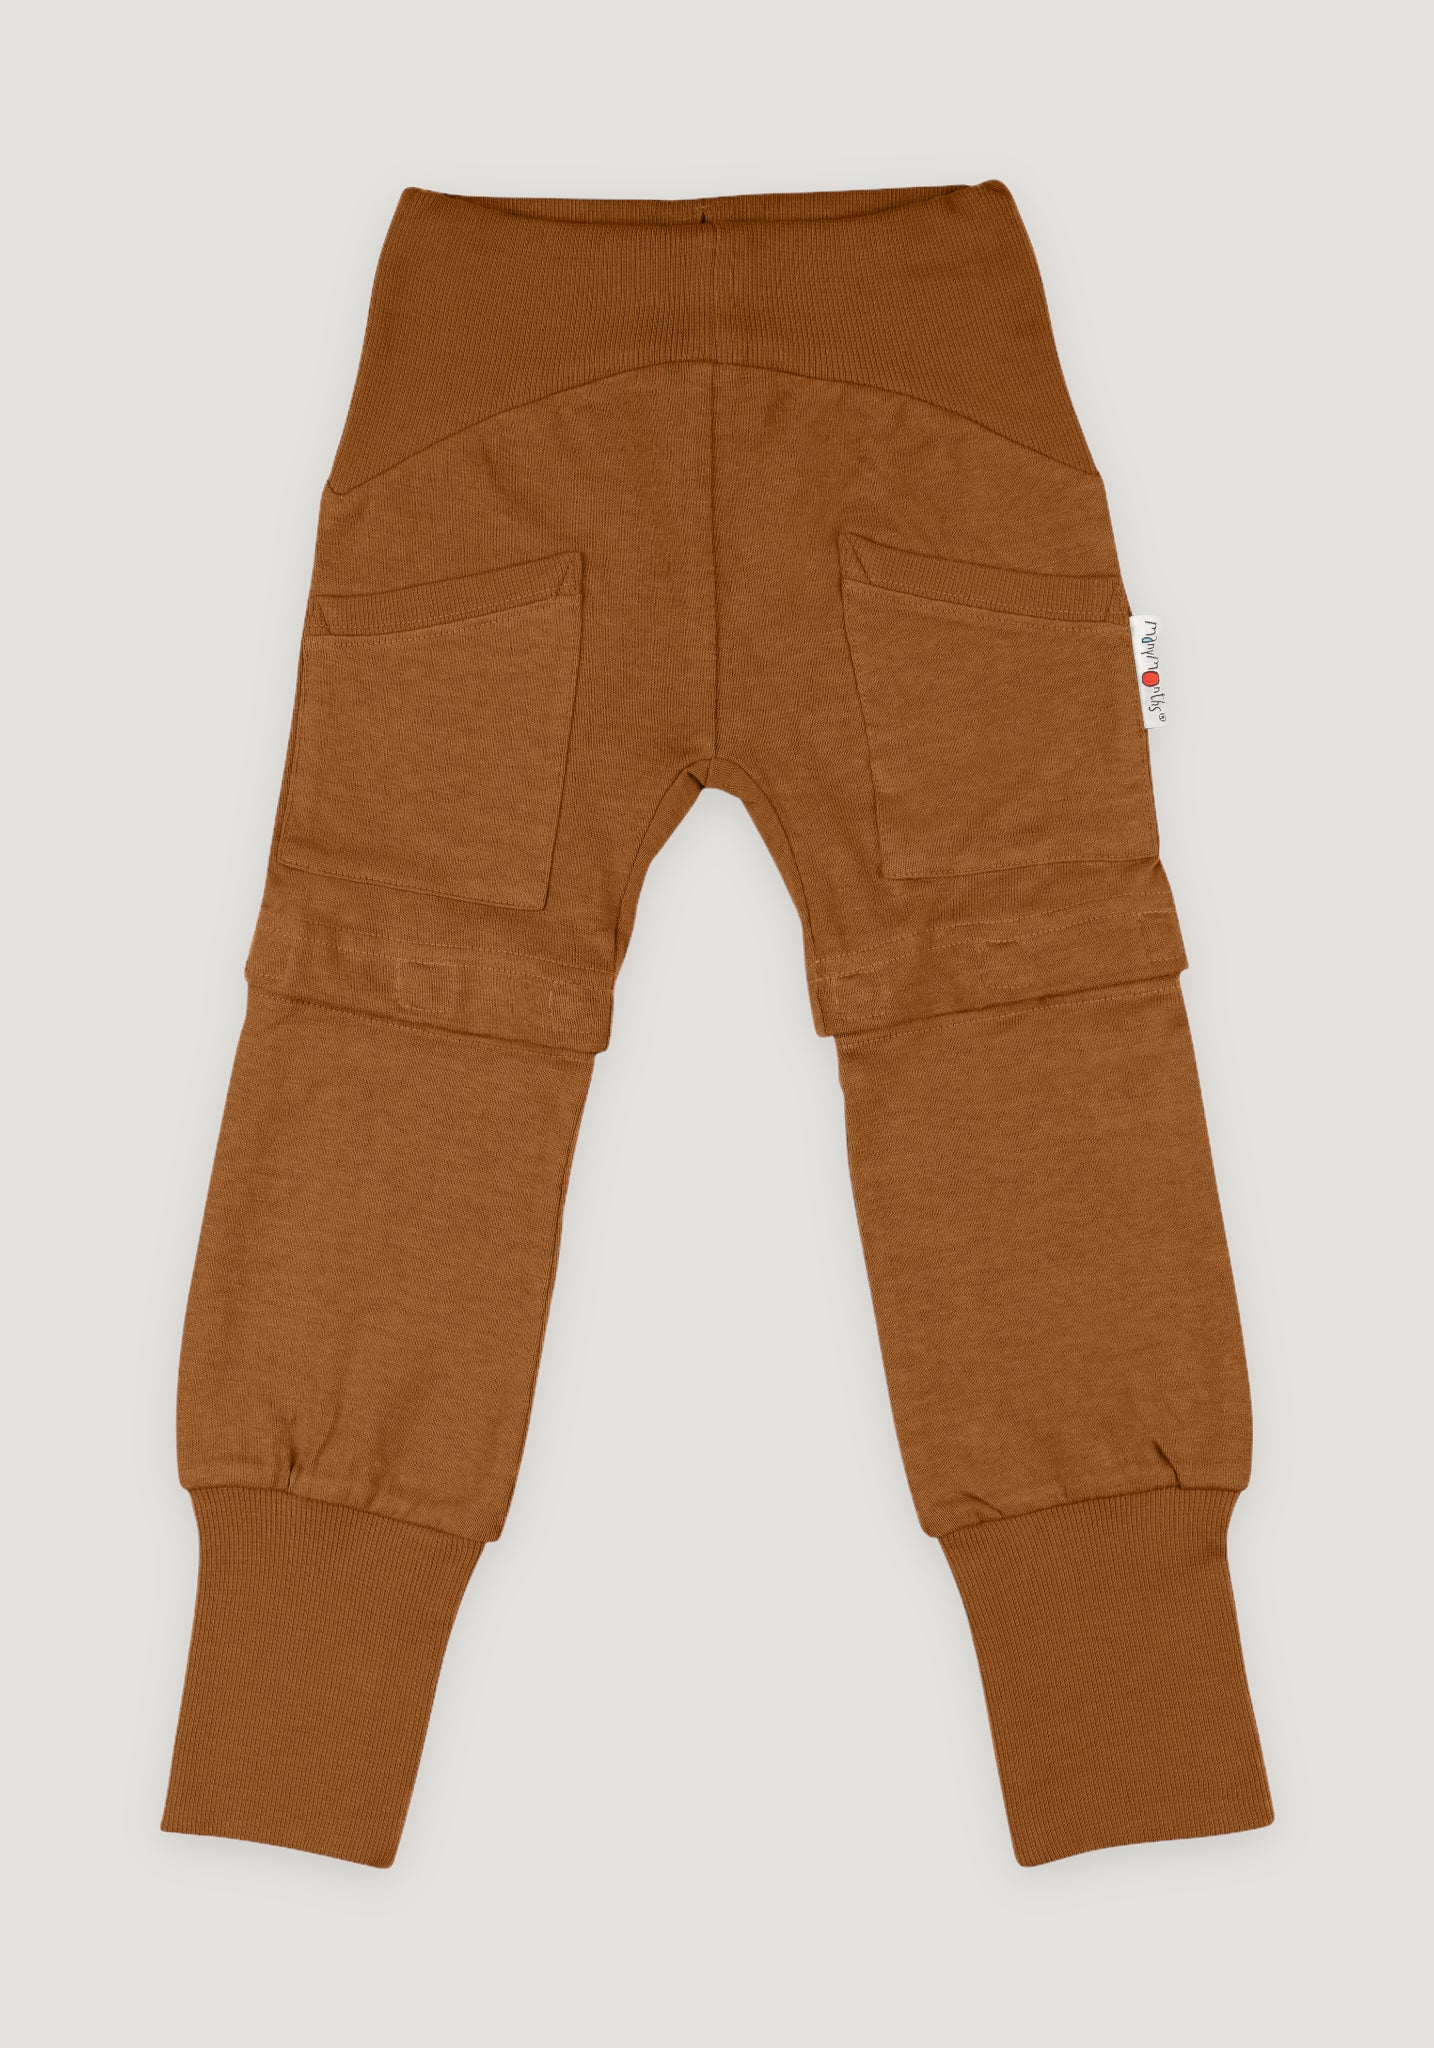 Pantaloni lungi/scurți (2 în 1) din cânepă și bumbac - Yoga Pecan Pie 1-2/2,5 ani (80-92/98 cm)